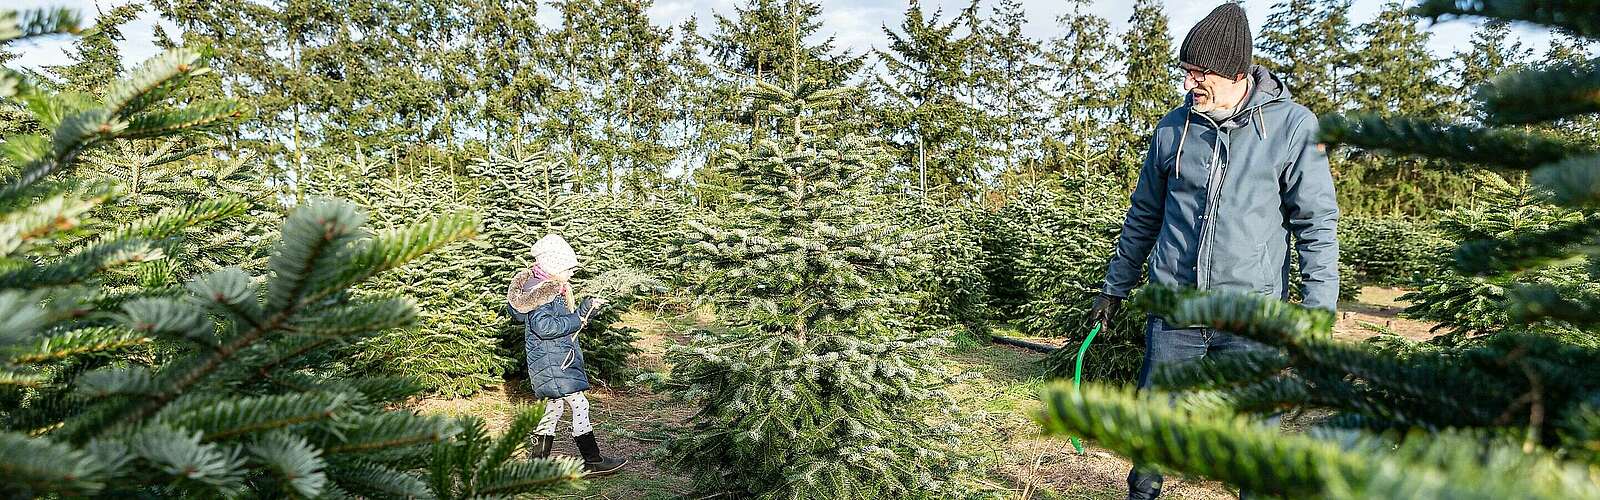 Weihnachtsbaumschlagen auf dem Werderaner Tannenhof,
        
    

        Foto: Fotograf / Lizenz - Media Import/Steffen Lehmann